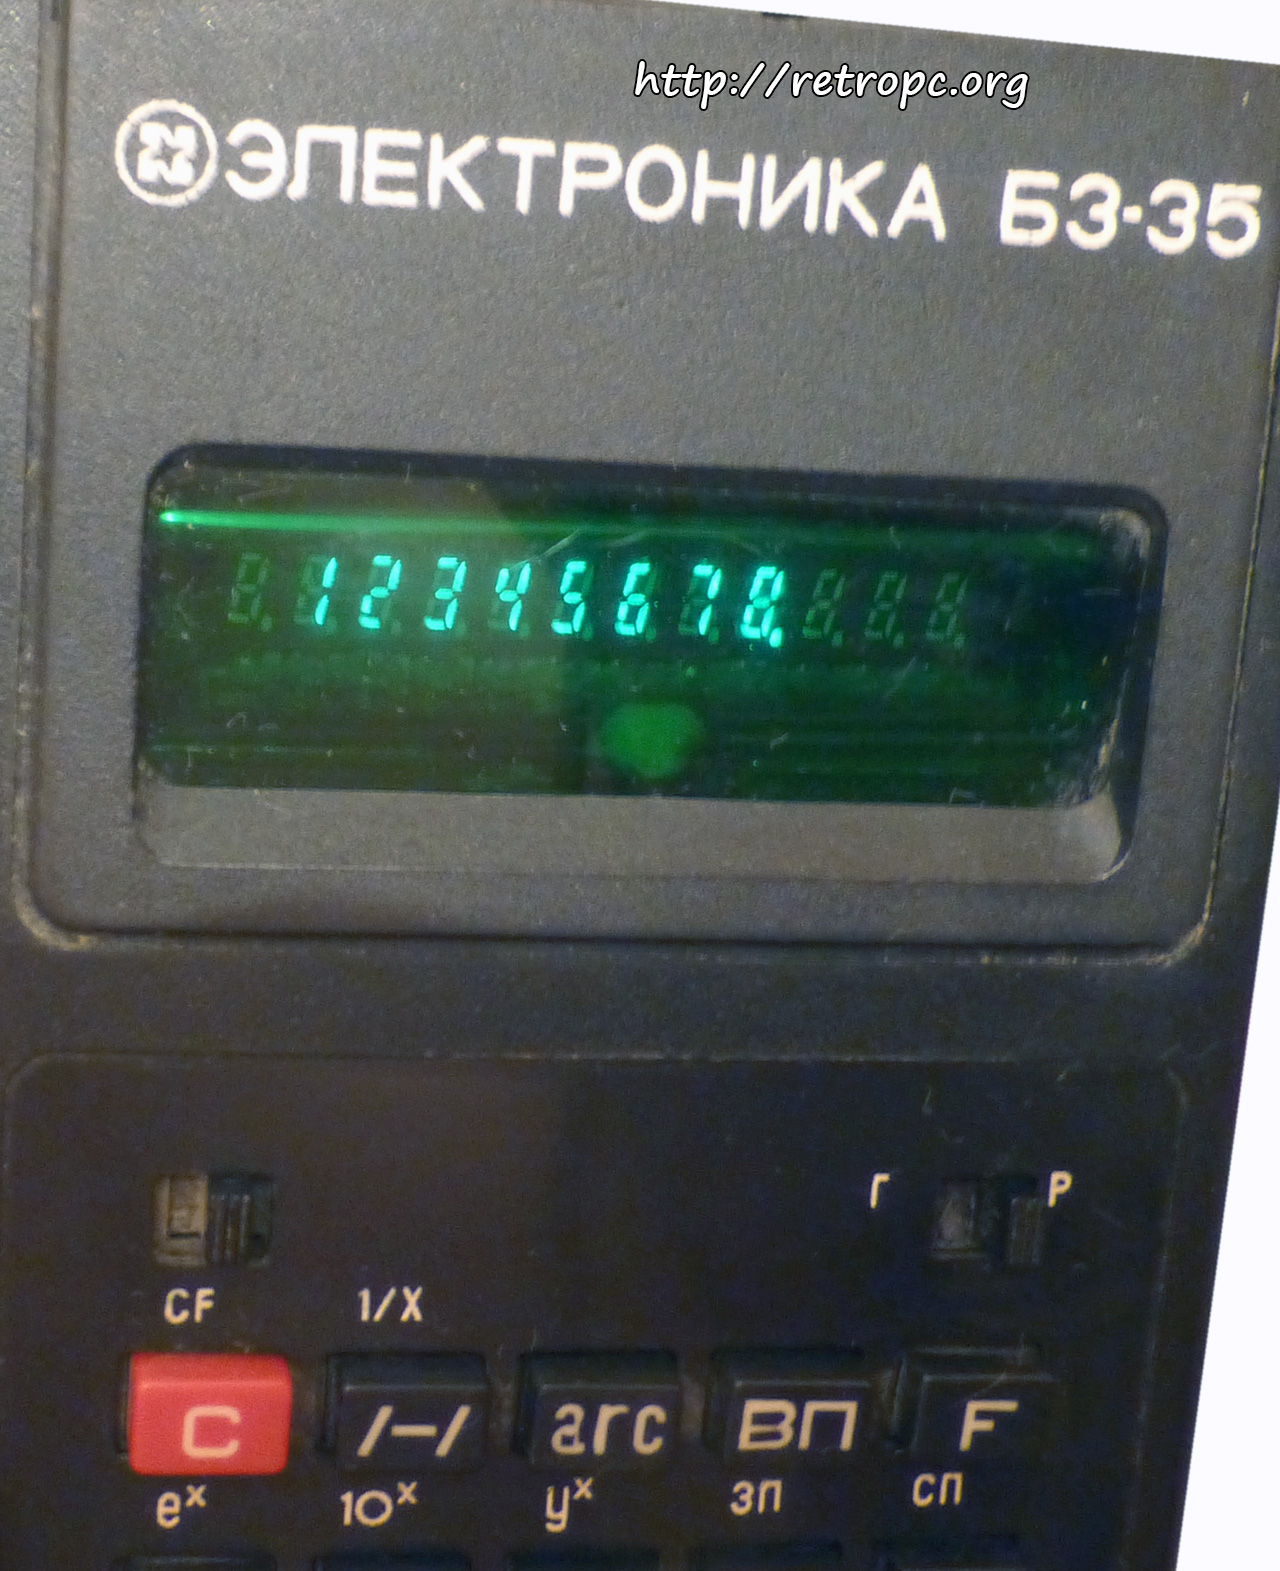 Калькулятор Электроника Б3-35 в рабочем состоянии